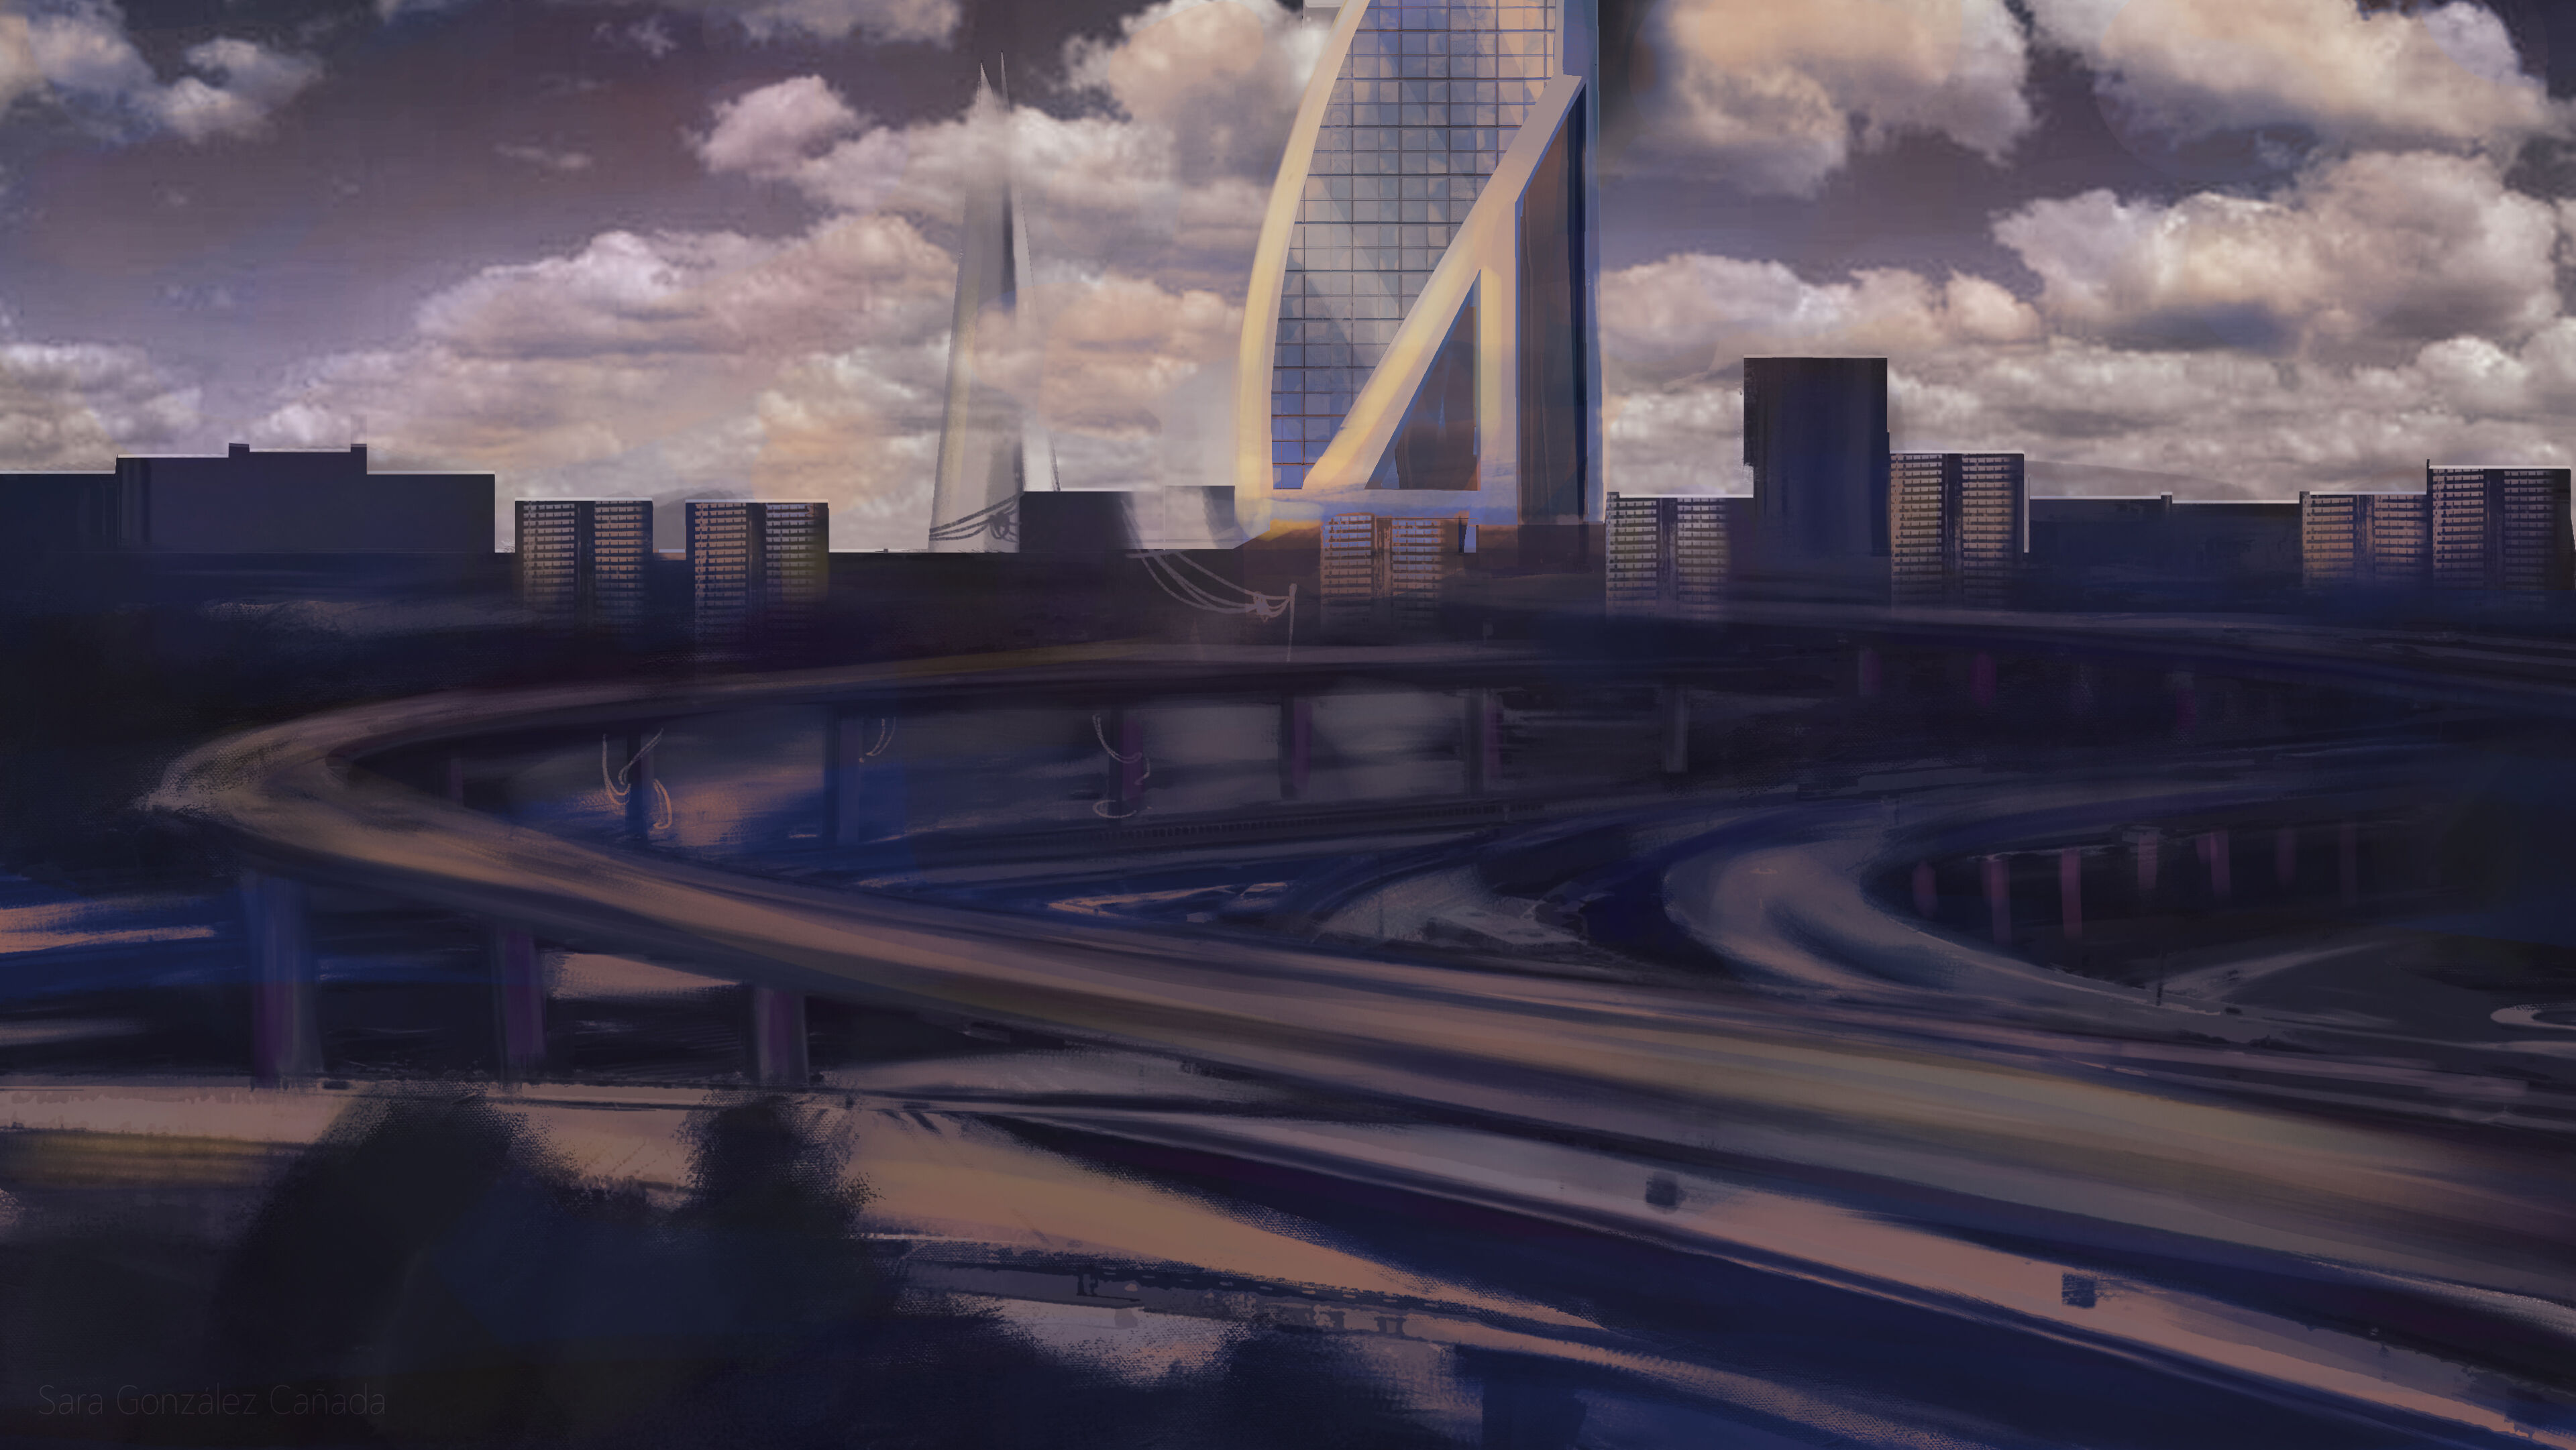 Representación artística de una ciudad futurista al anochecer con carreteras iluminadas y un rascacielos prominente.